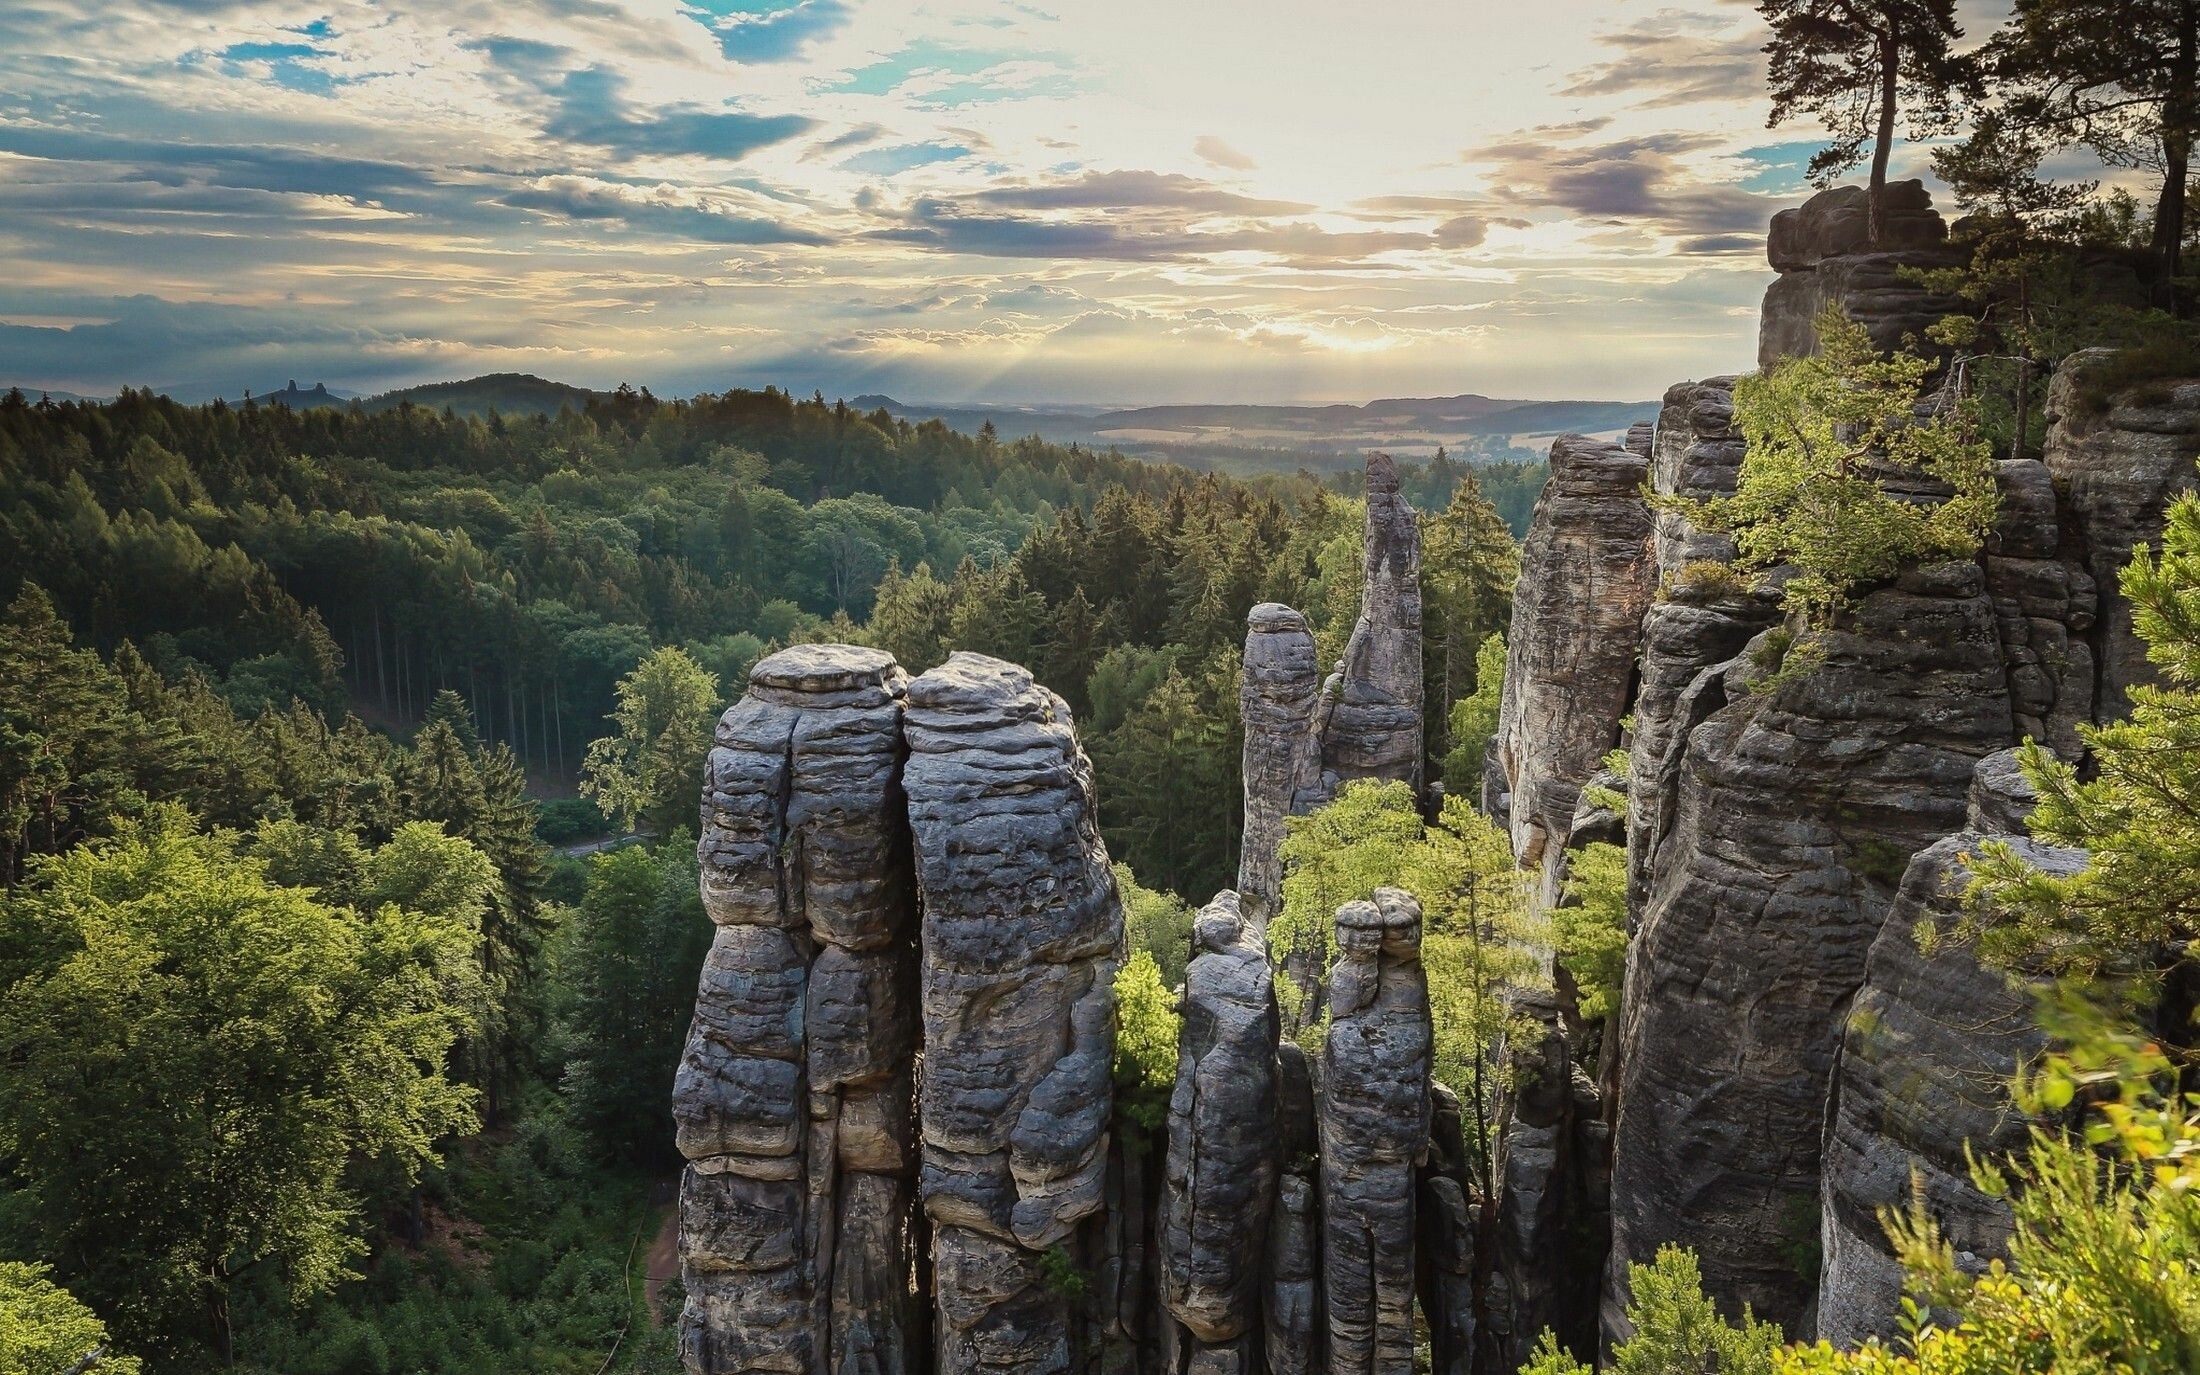 Czechia (Czech Republic): Prachov Rocks, a rock formation in 5 kilometers west of Jicin. 2200x1380 HD Wallpaper.